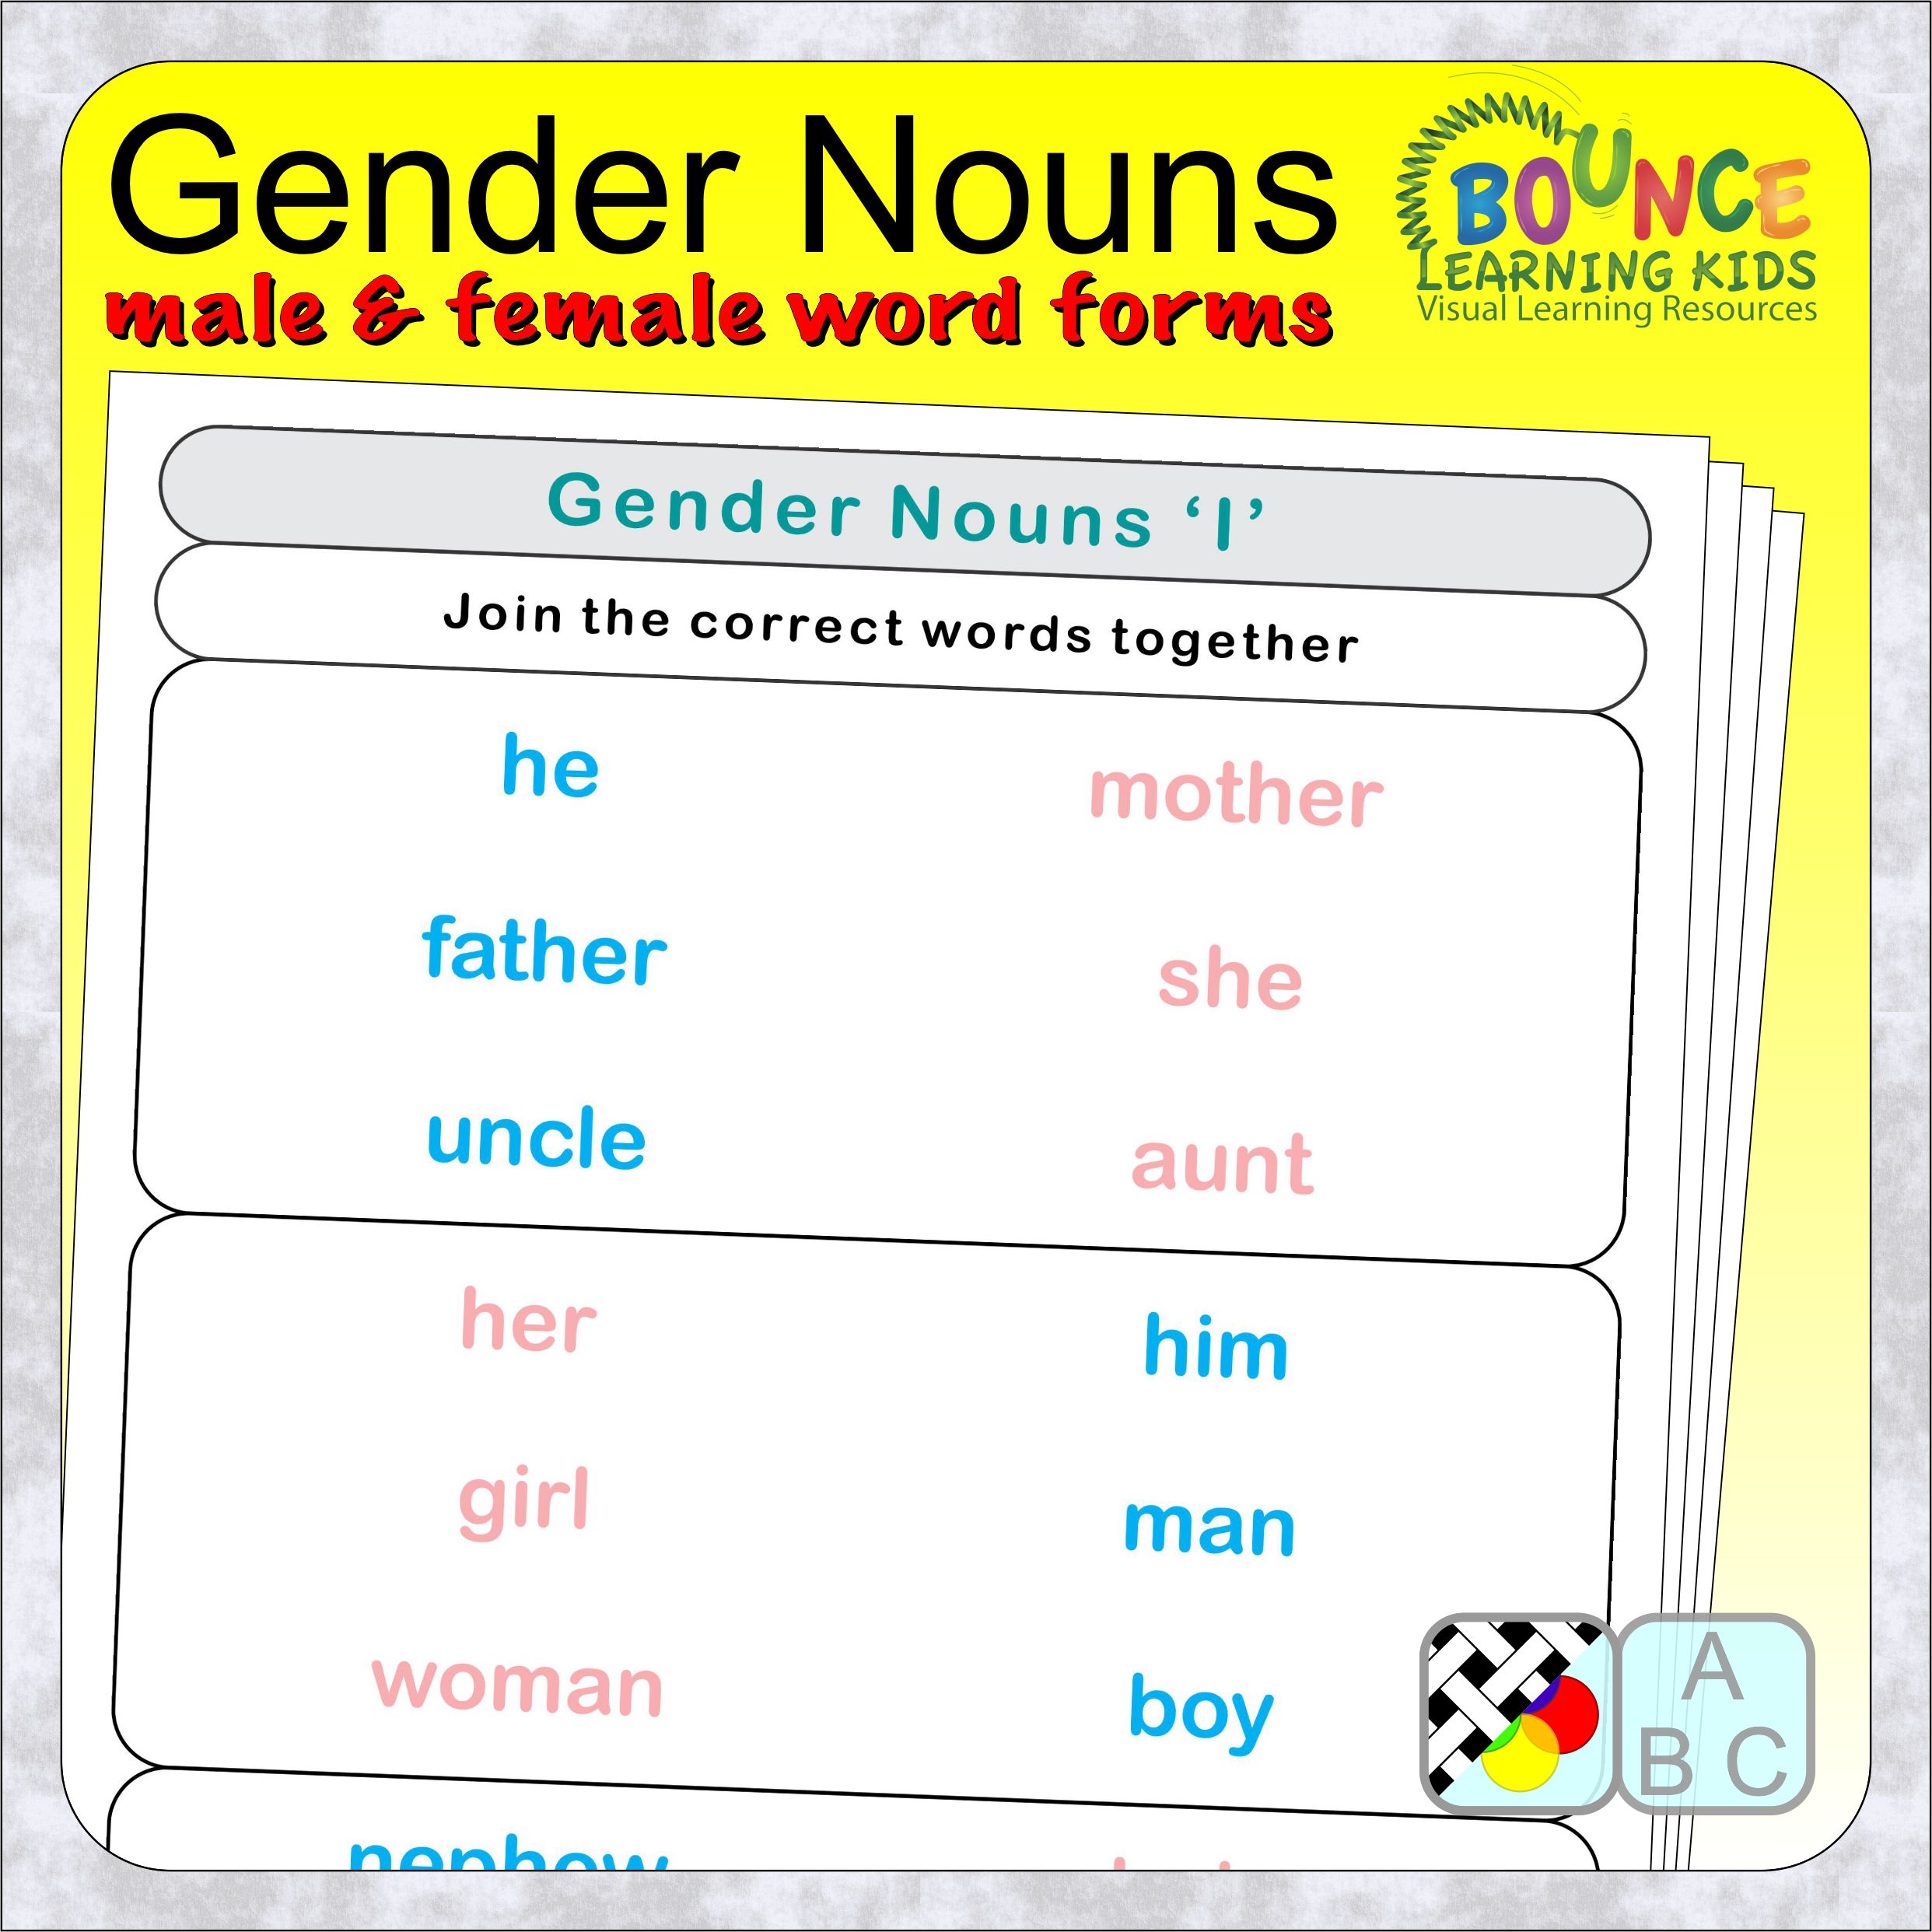 Gender Nouns Worksheet Gender Of Nouns Worksheet Free Esl Printable Worksheets Made By